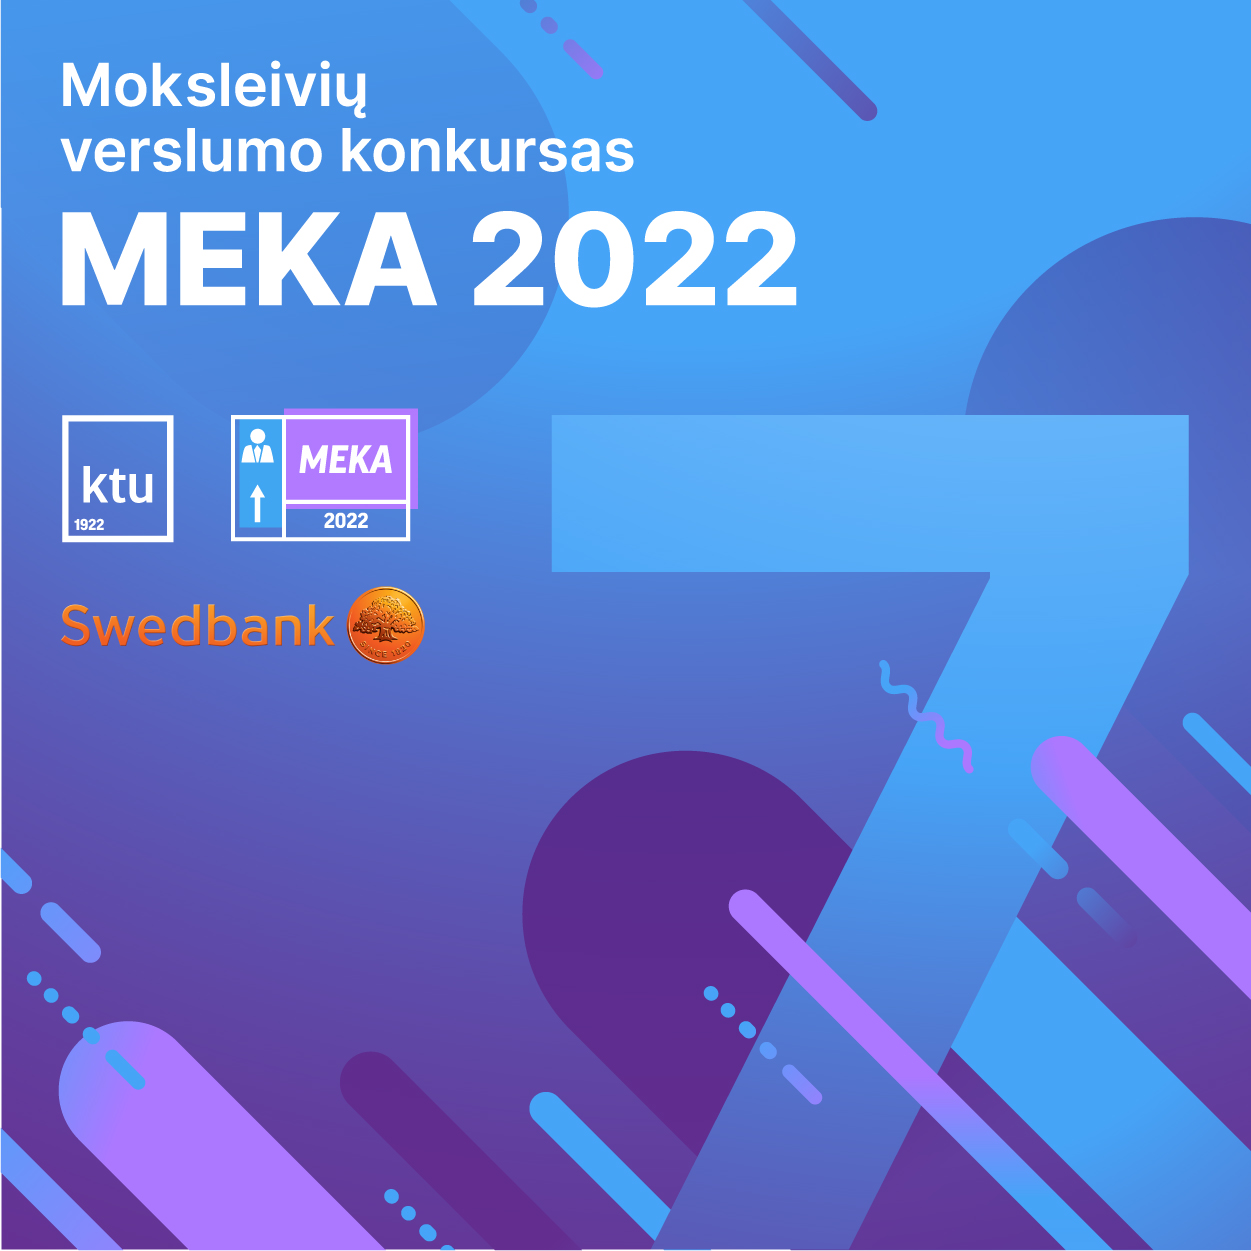 MEKA 2022